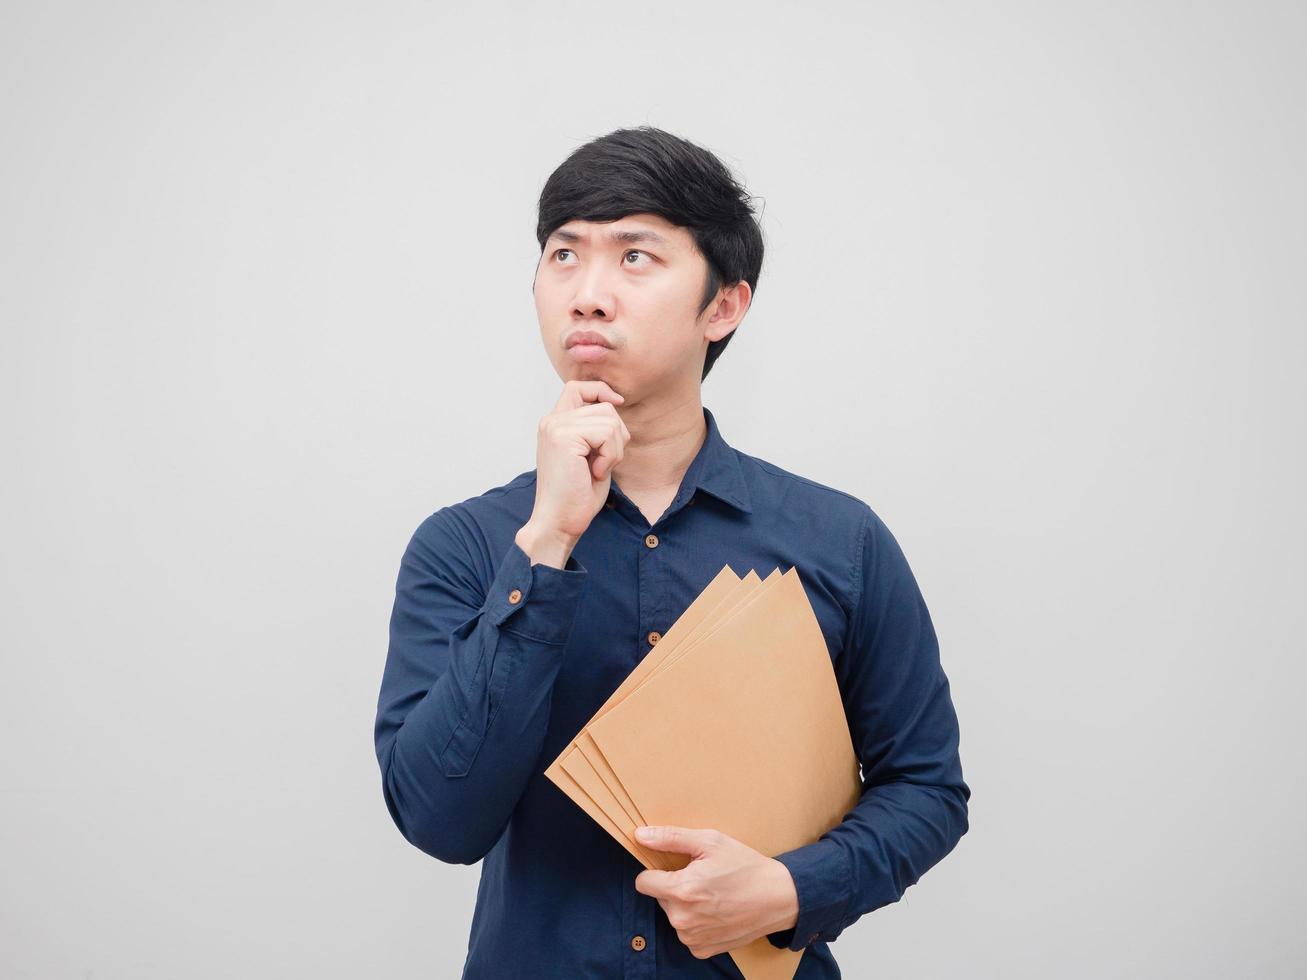 Asian man holding document envelope and thinking something on white background photo